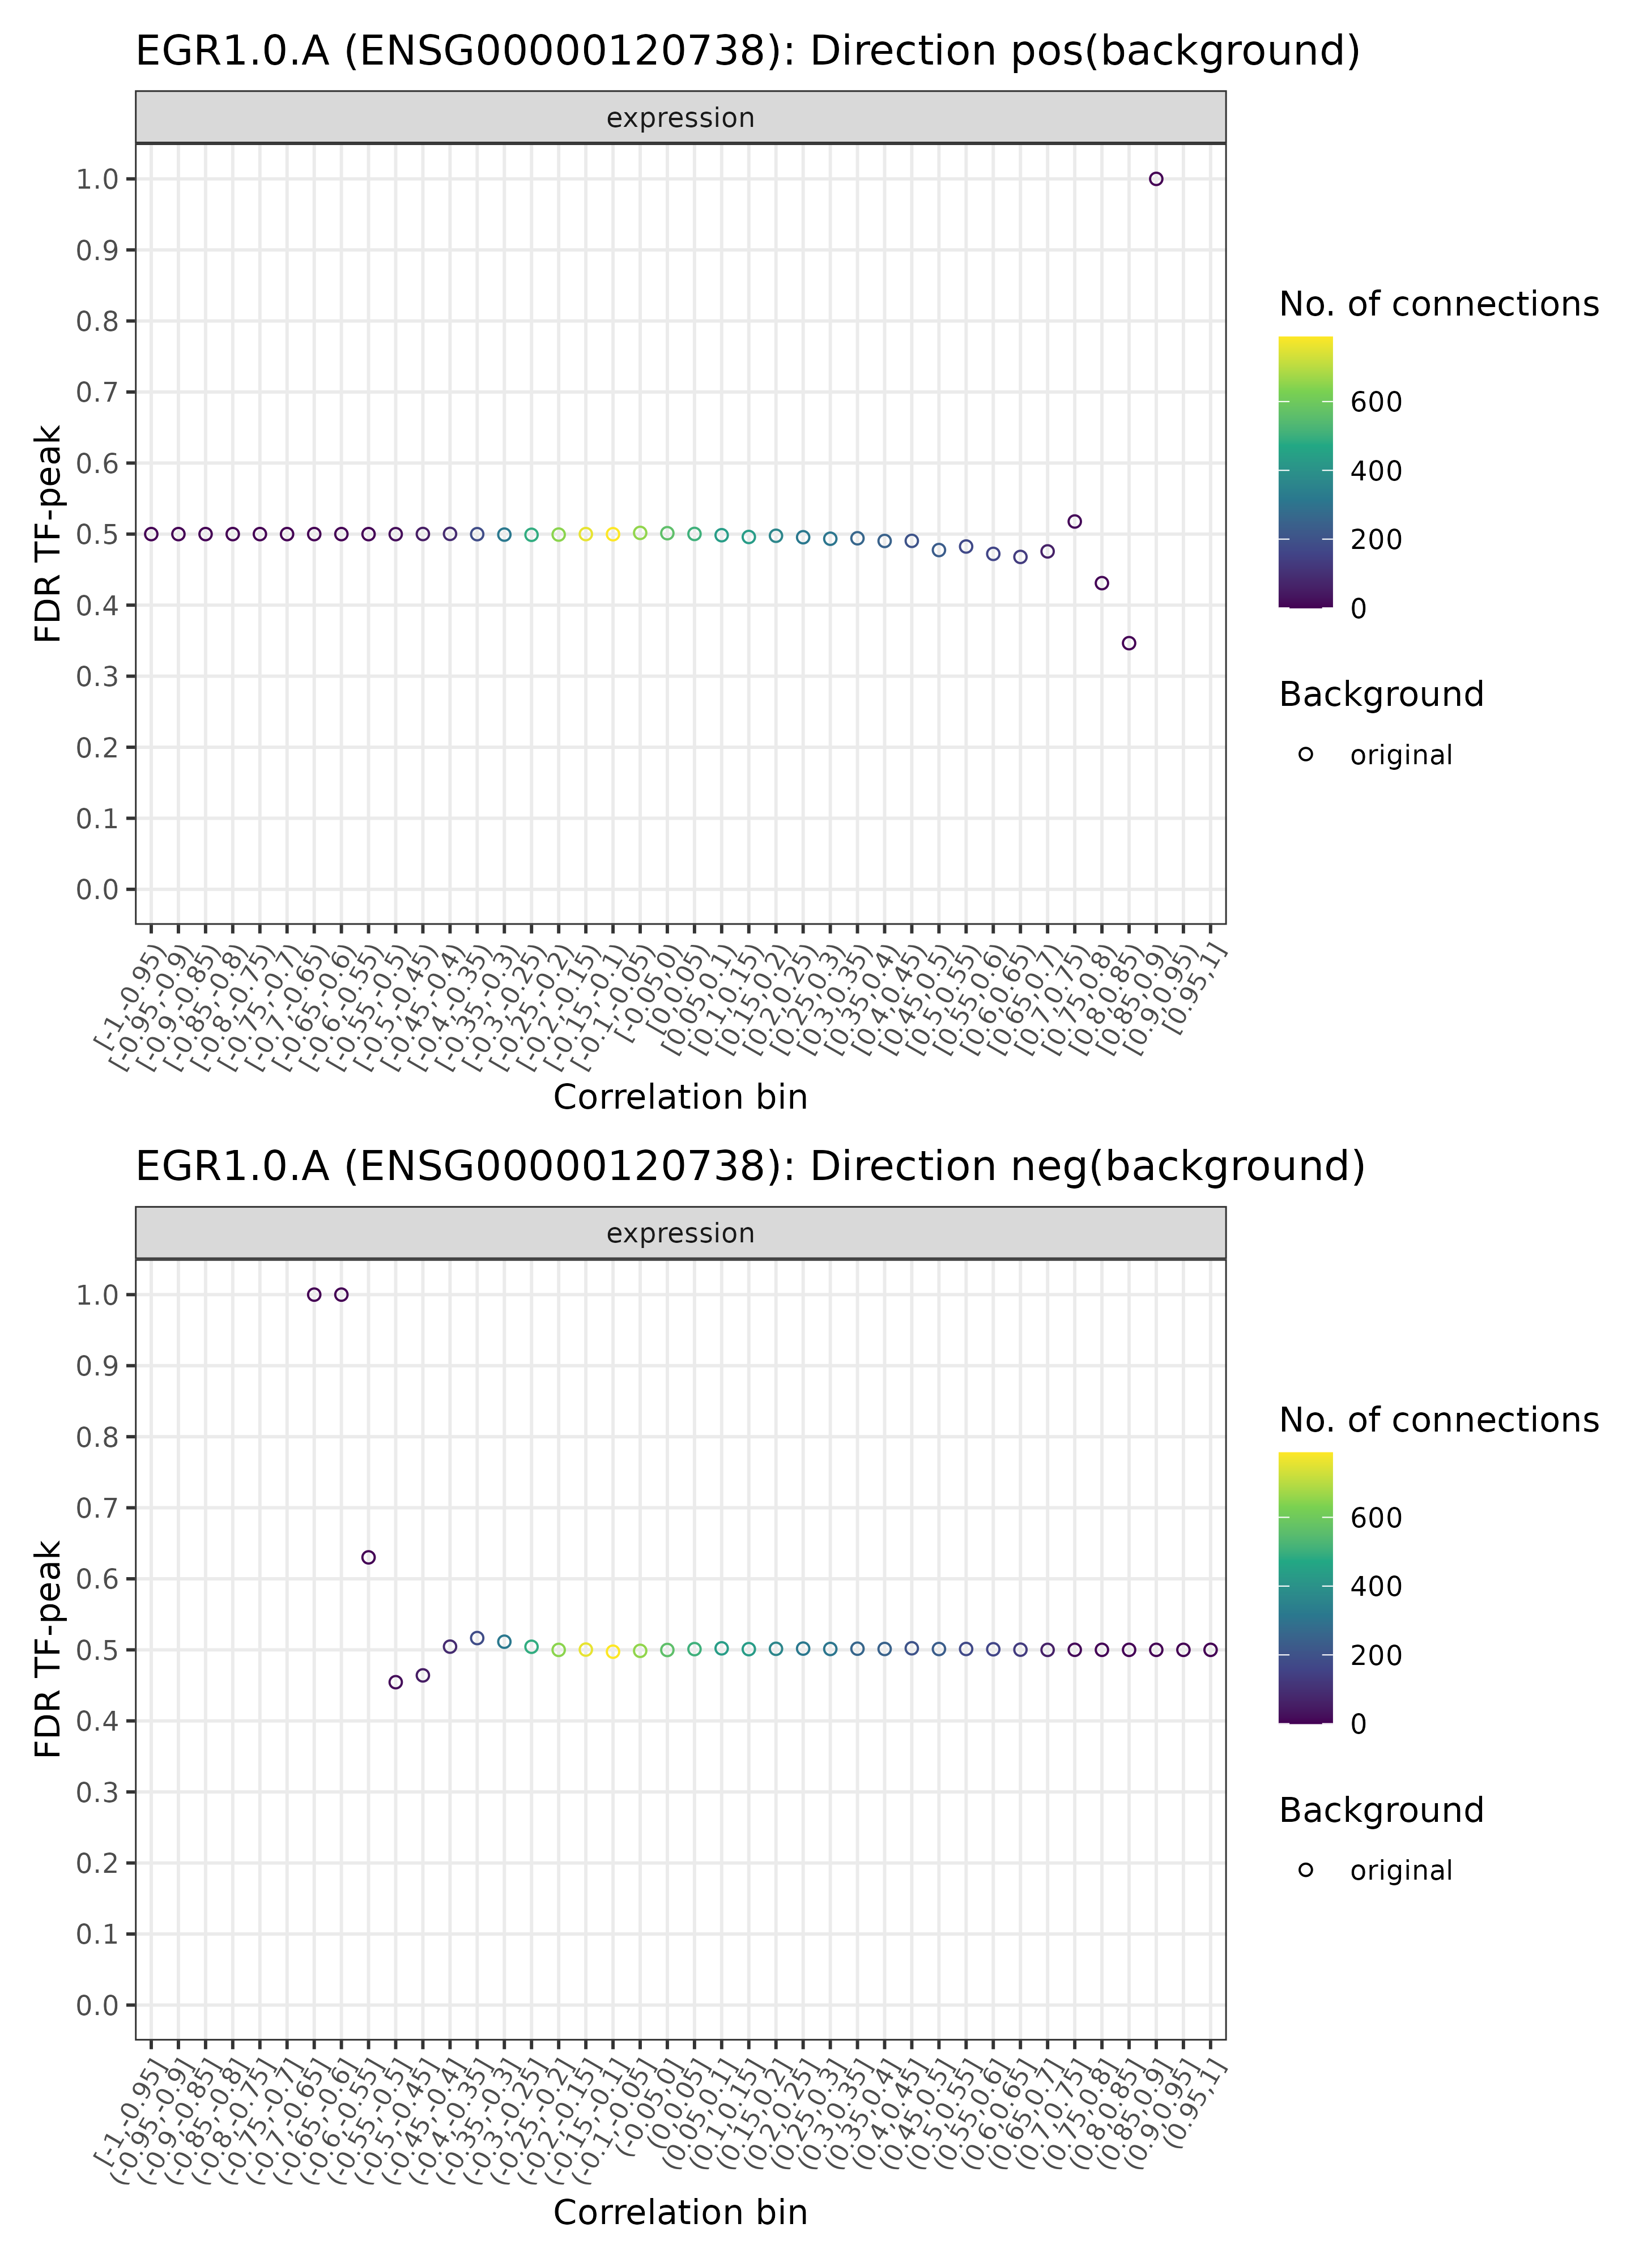 <i>TF-enhancer diagnostic plots for EGR1.0.A (background)</i>